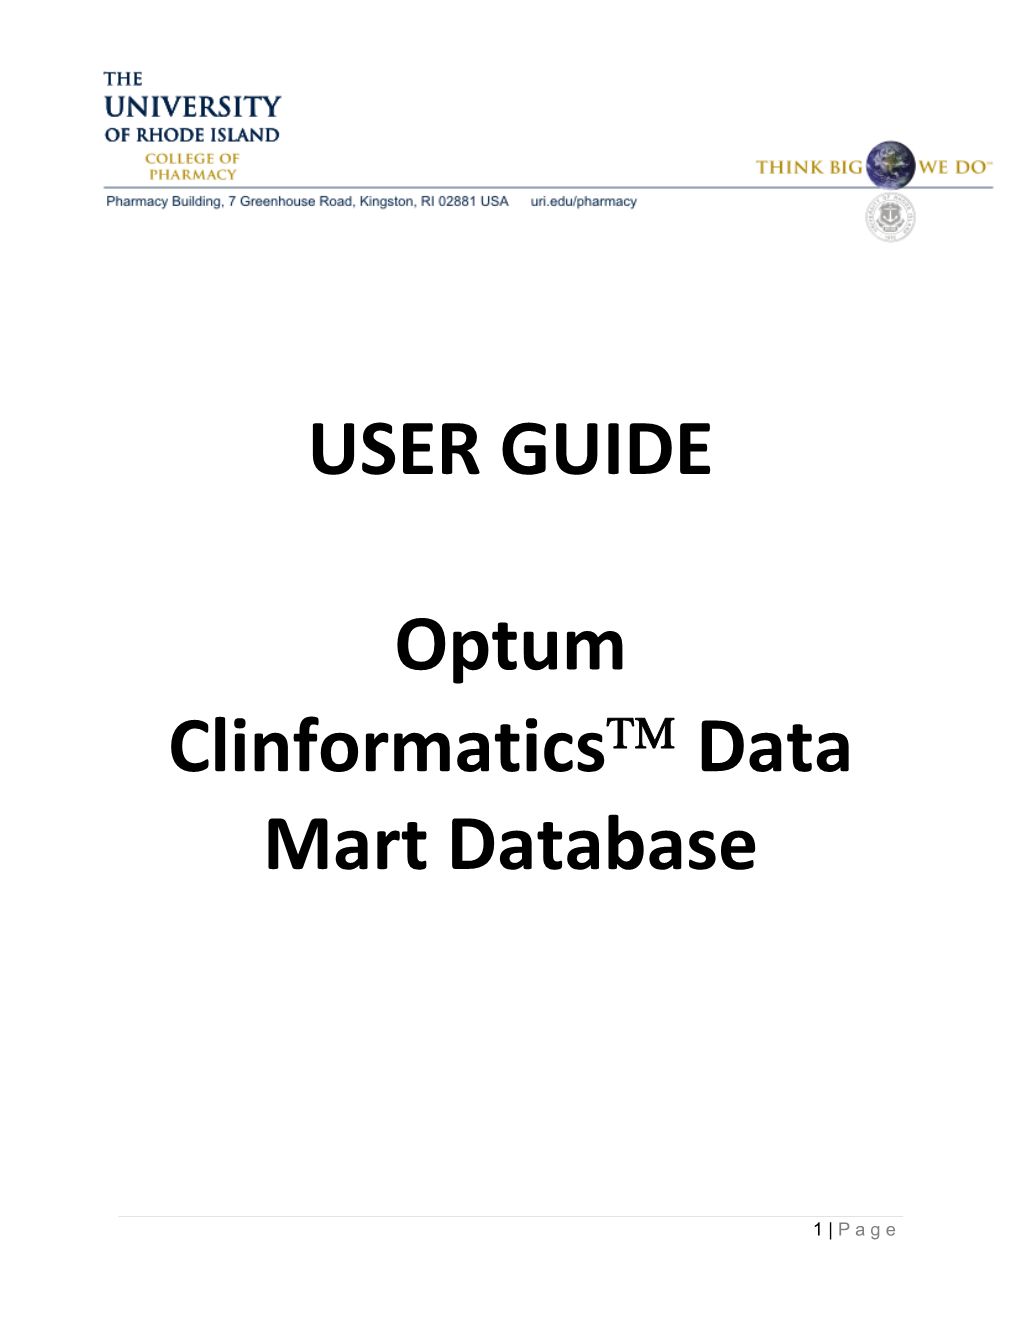 USER GUIDE Optum Clinformatics™ Data Mart Database